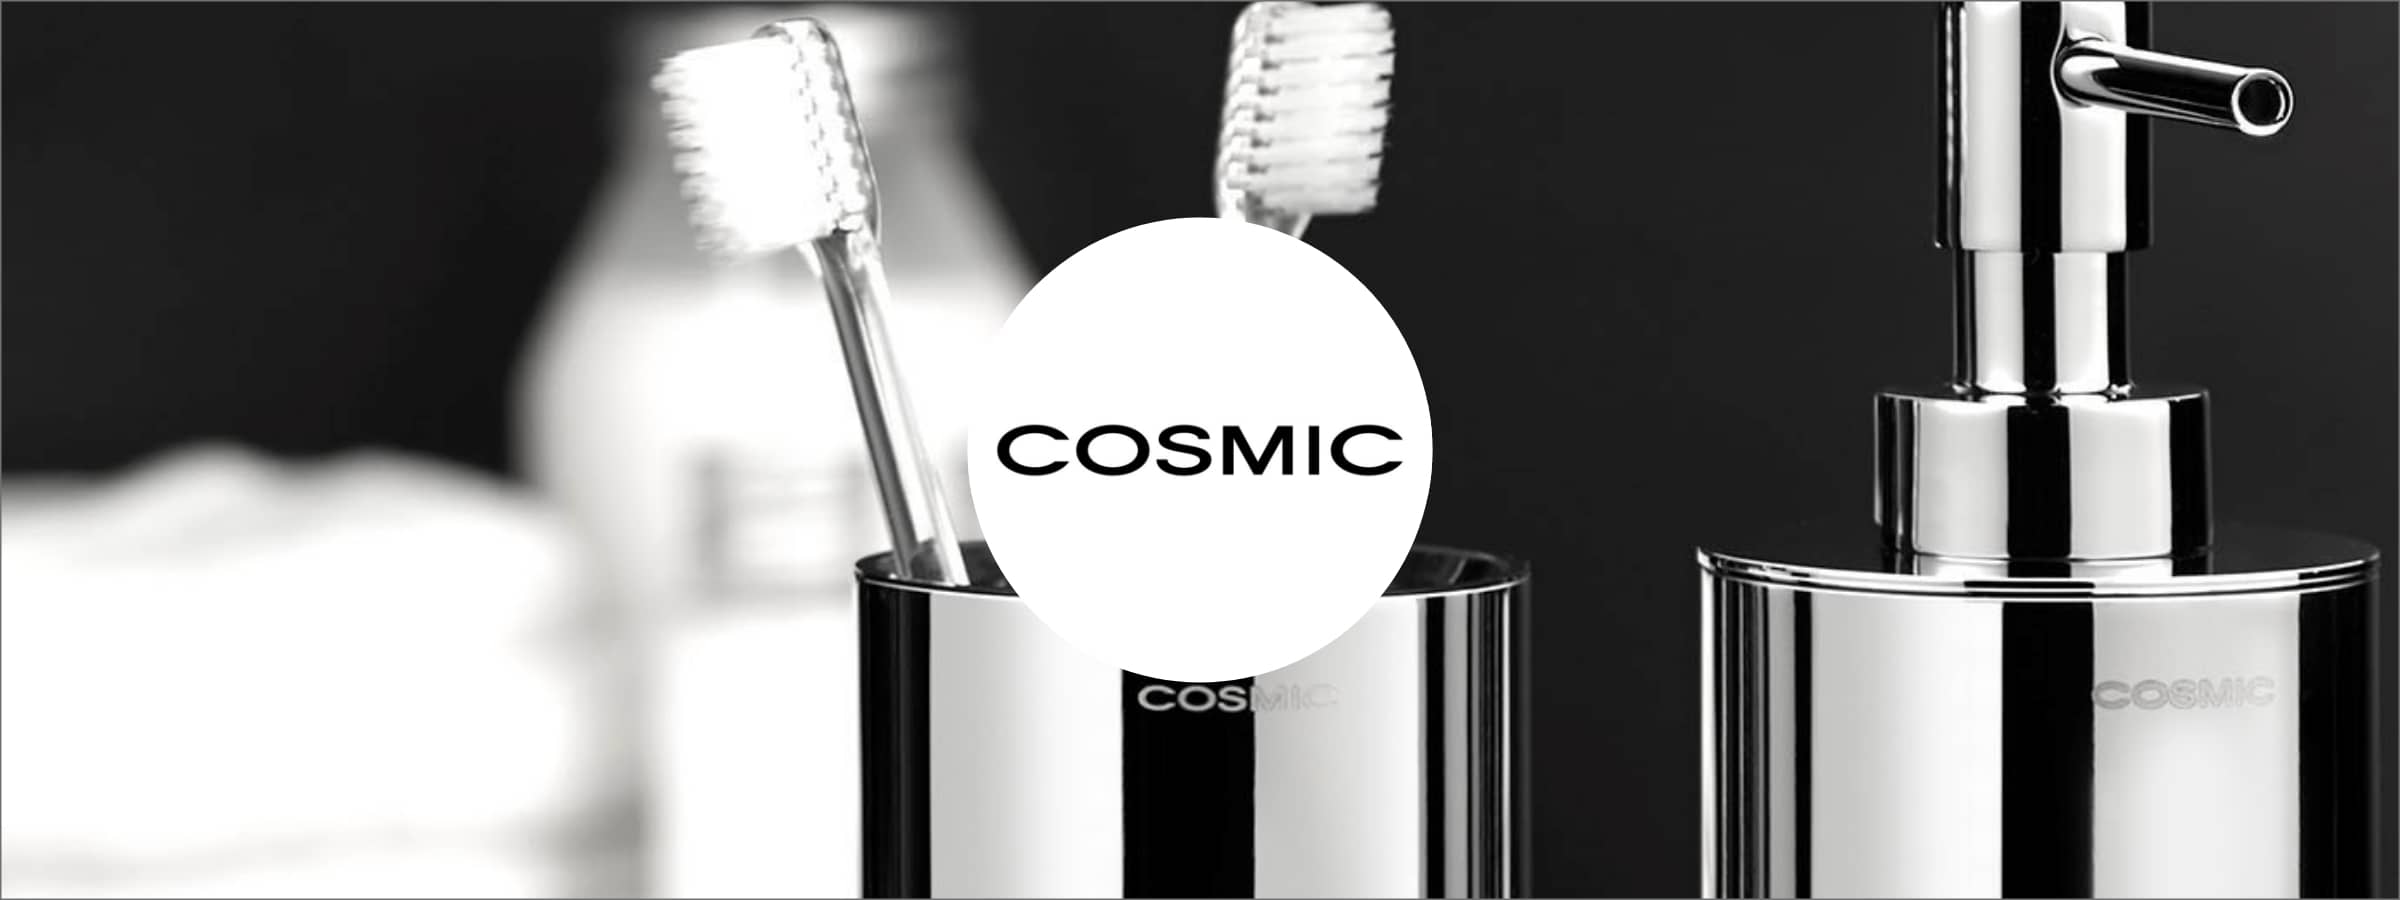 Colecciones y productos de la marca - Cosmic